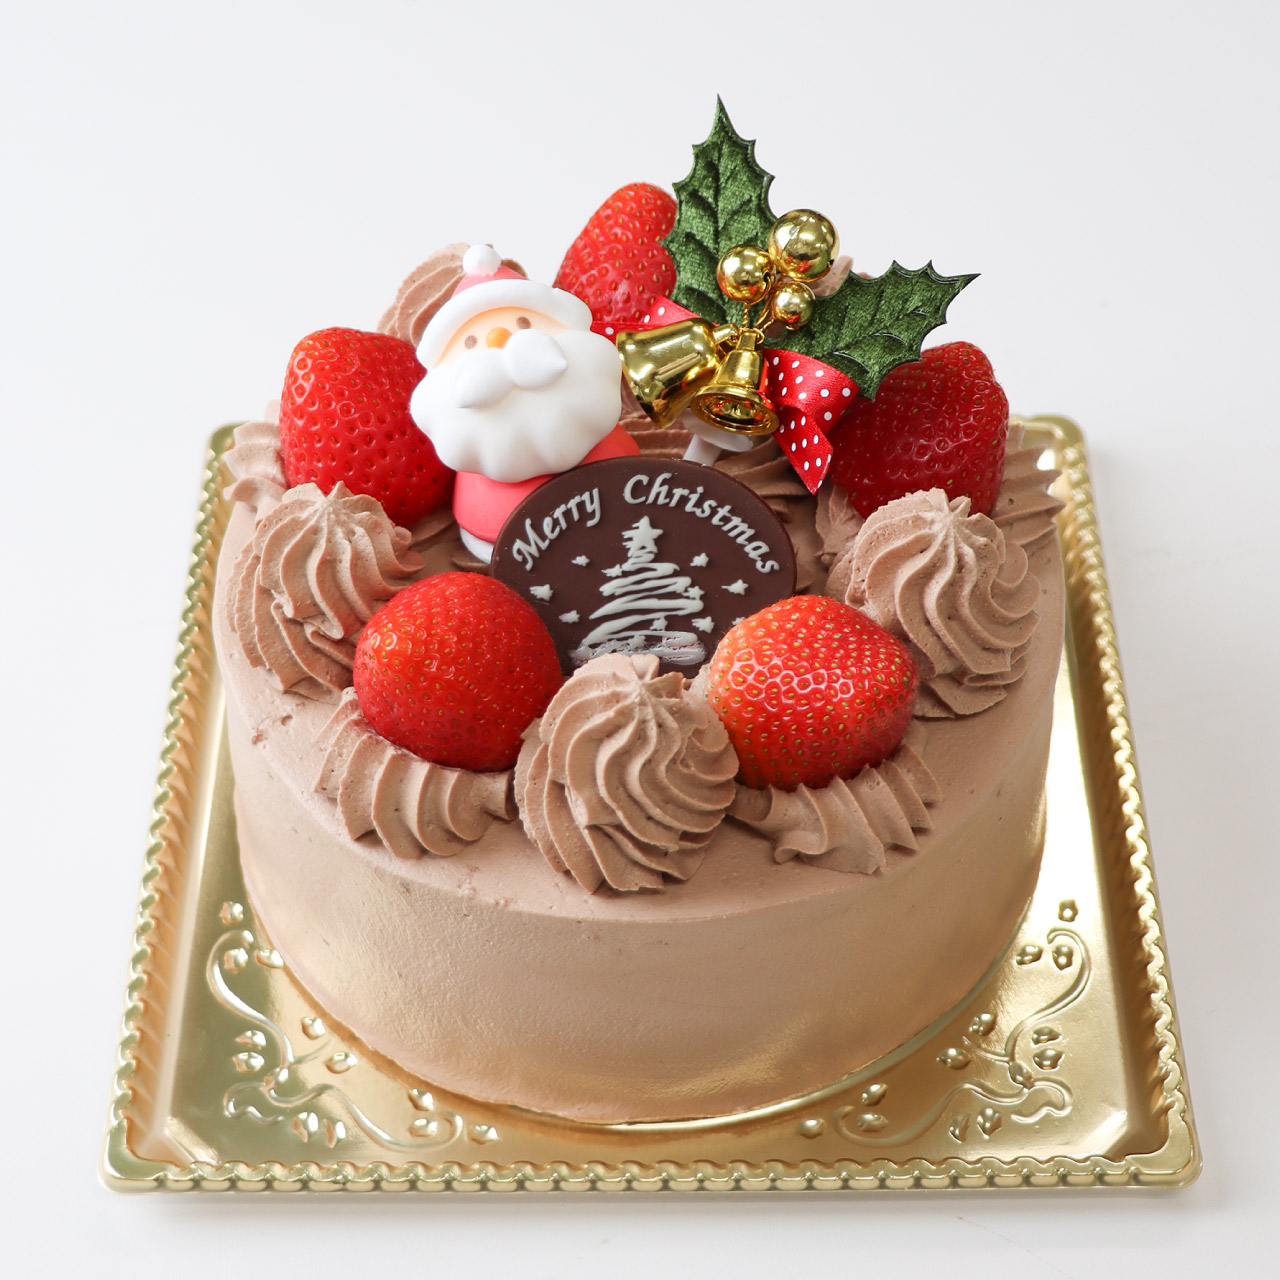 【12/21-25店頭受取】チョコレートクリスマス<18cm>